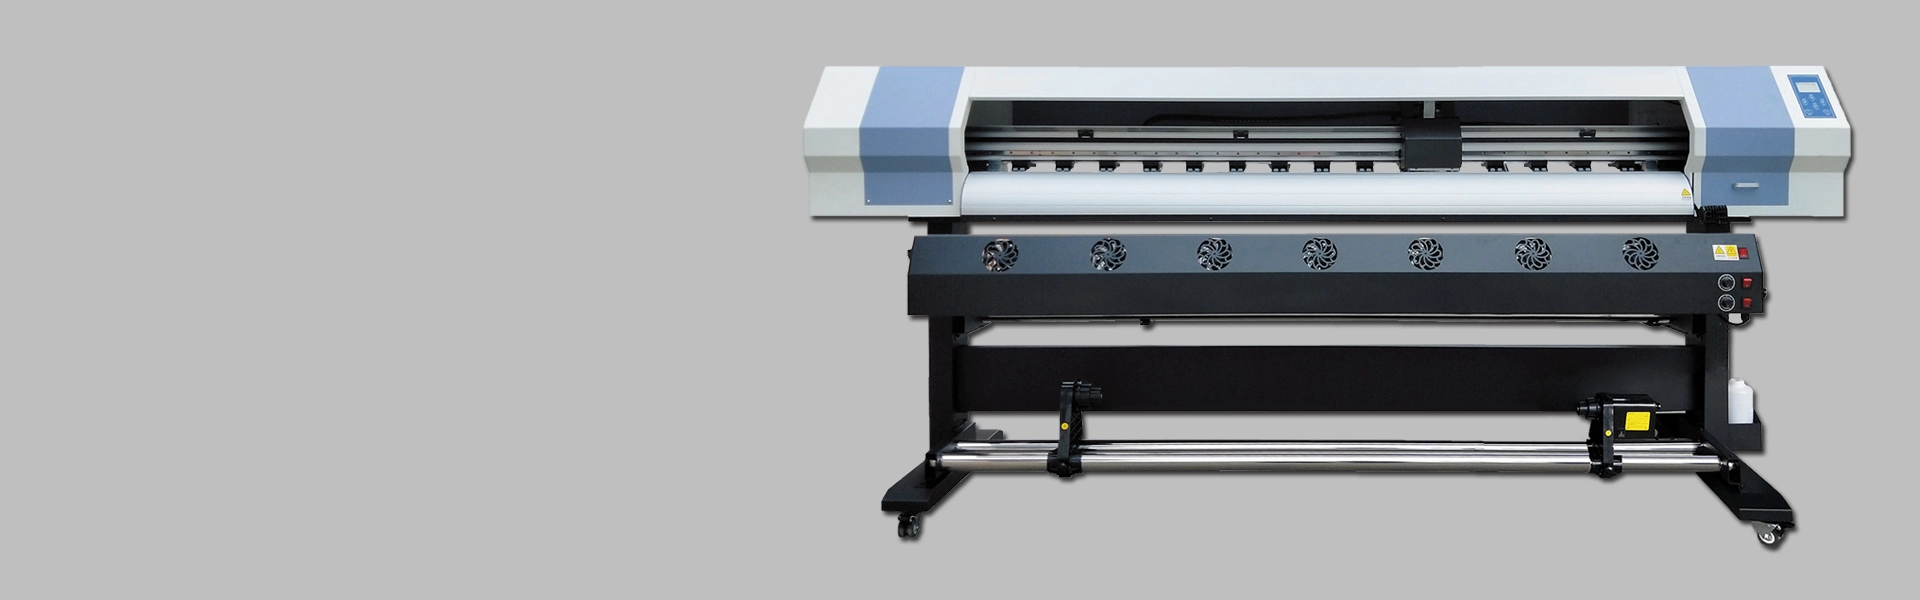 Impresora XP600 de 1,6 m